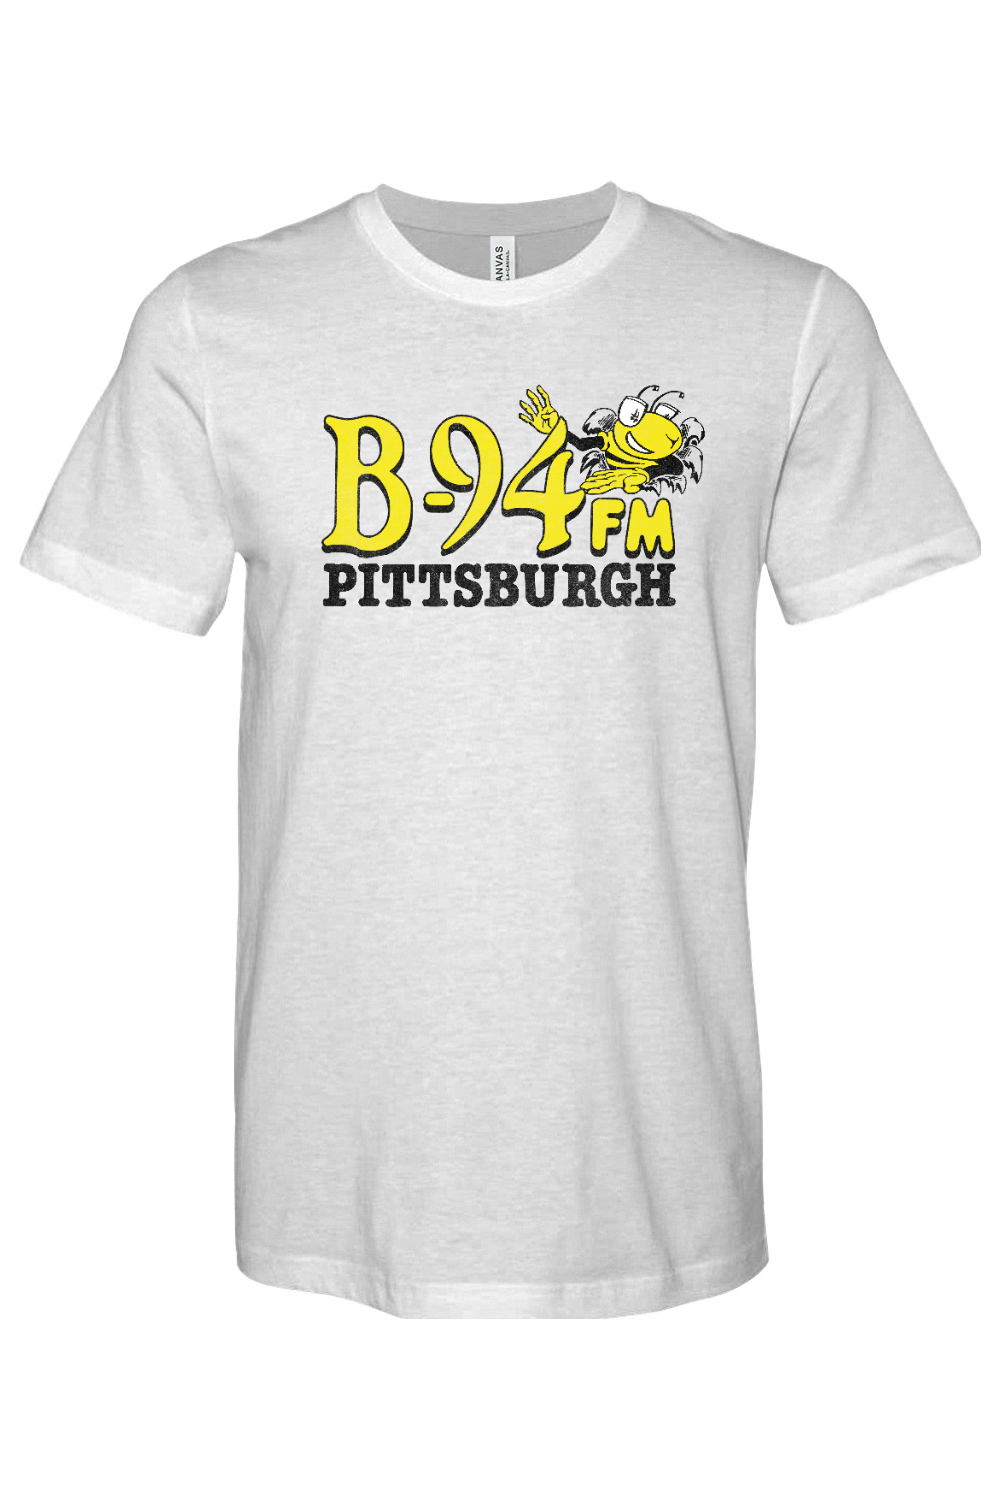 B-94 FM - Pittsburgh - Yinzylvania